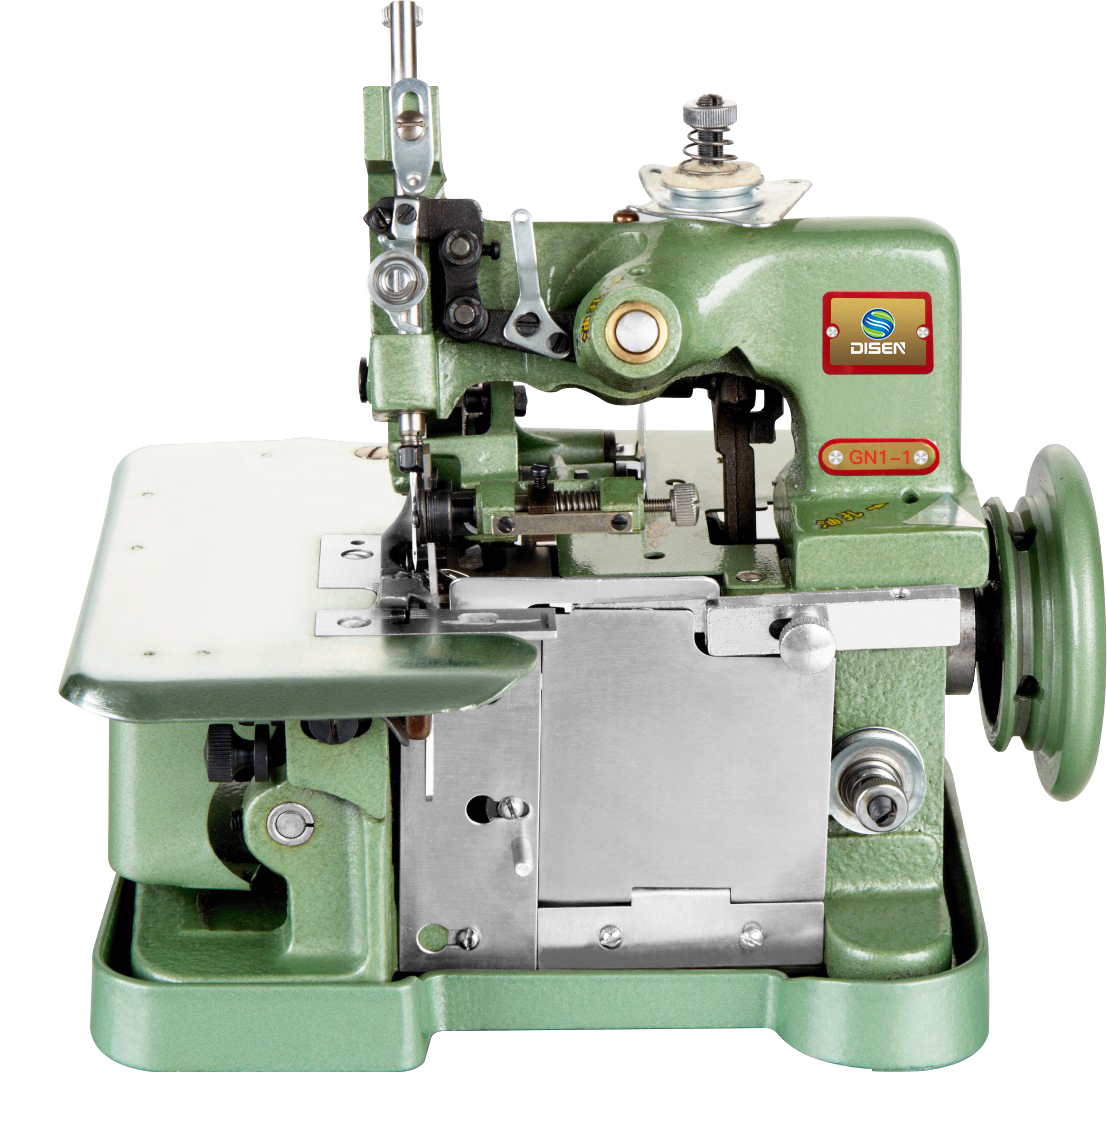 Среднескоростная промышленная швейная машина с оверлоком GN1-1D